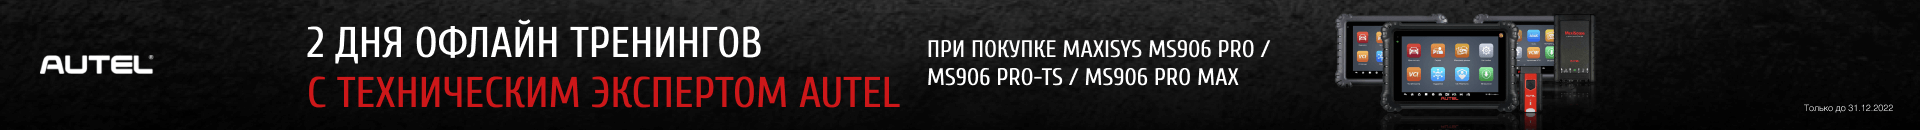 При покупке автосканеров экспертного уровня MaxiSys MS906 PRO, MS906 PRO-TS, MS906 PRO MAX в комплекте с прибором бесплатно поставляются сертификаты на бесплатное обучение в учебной лаборатории.